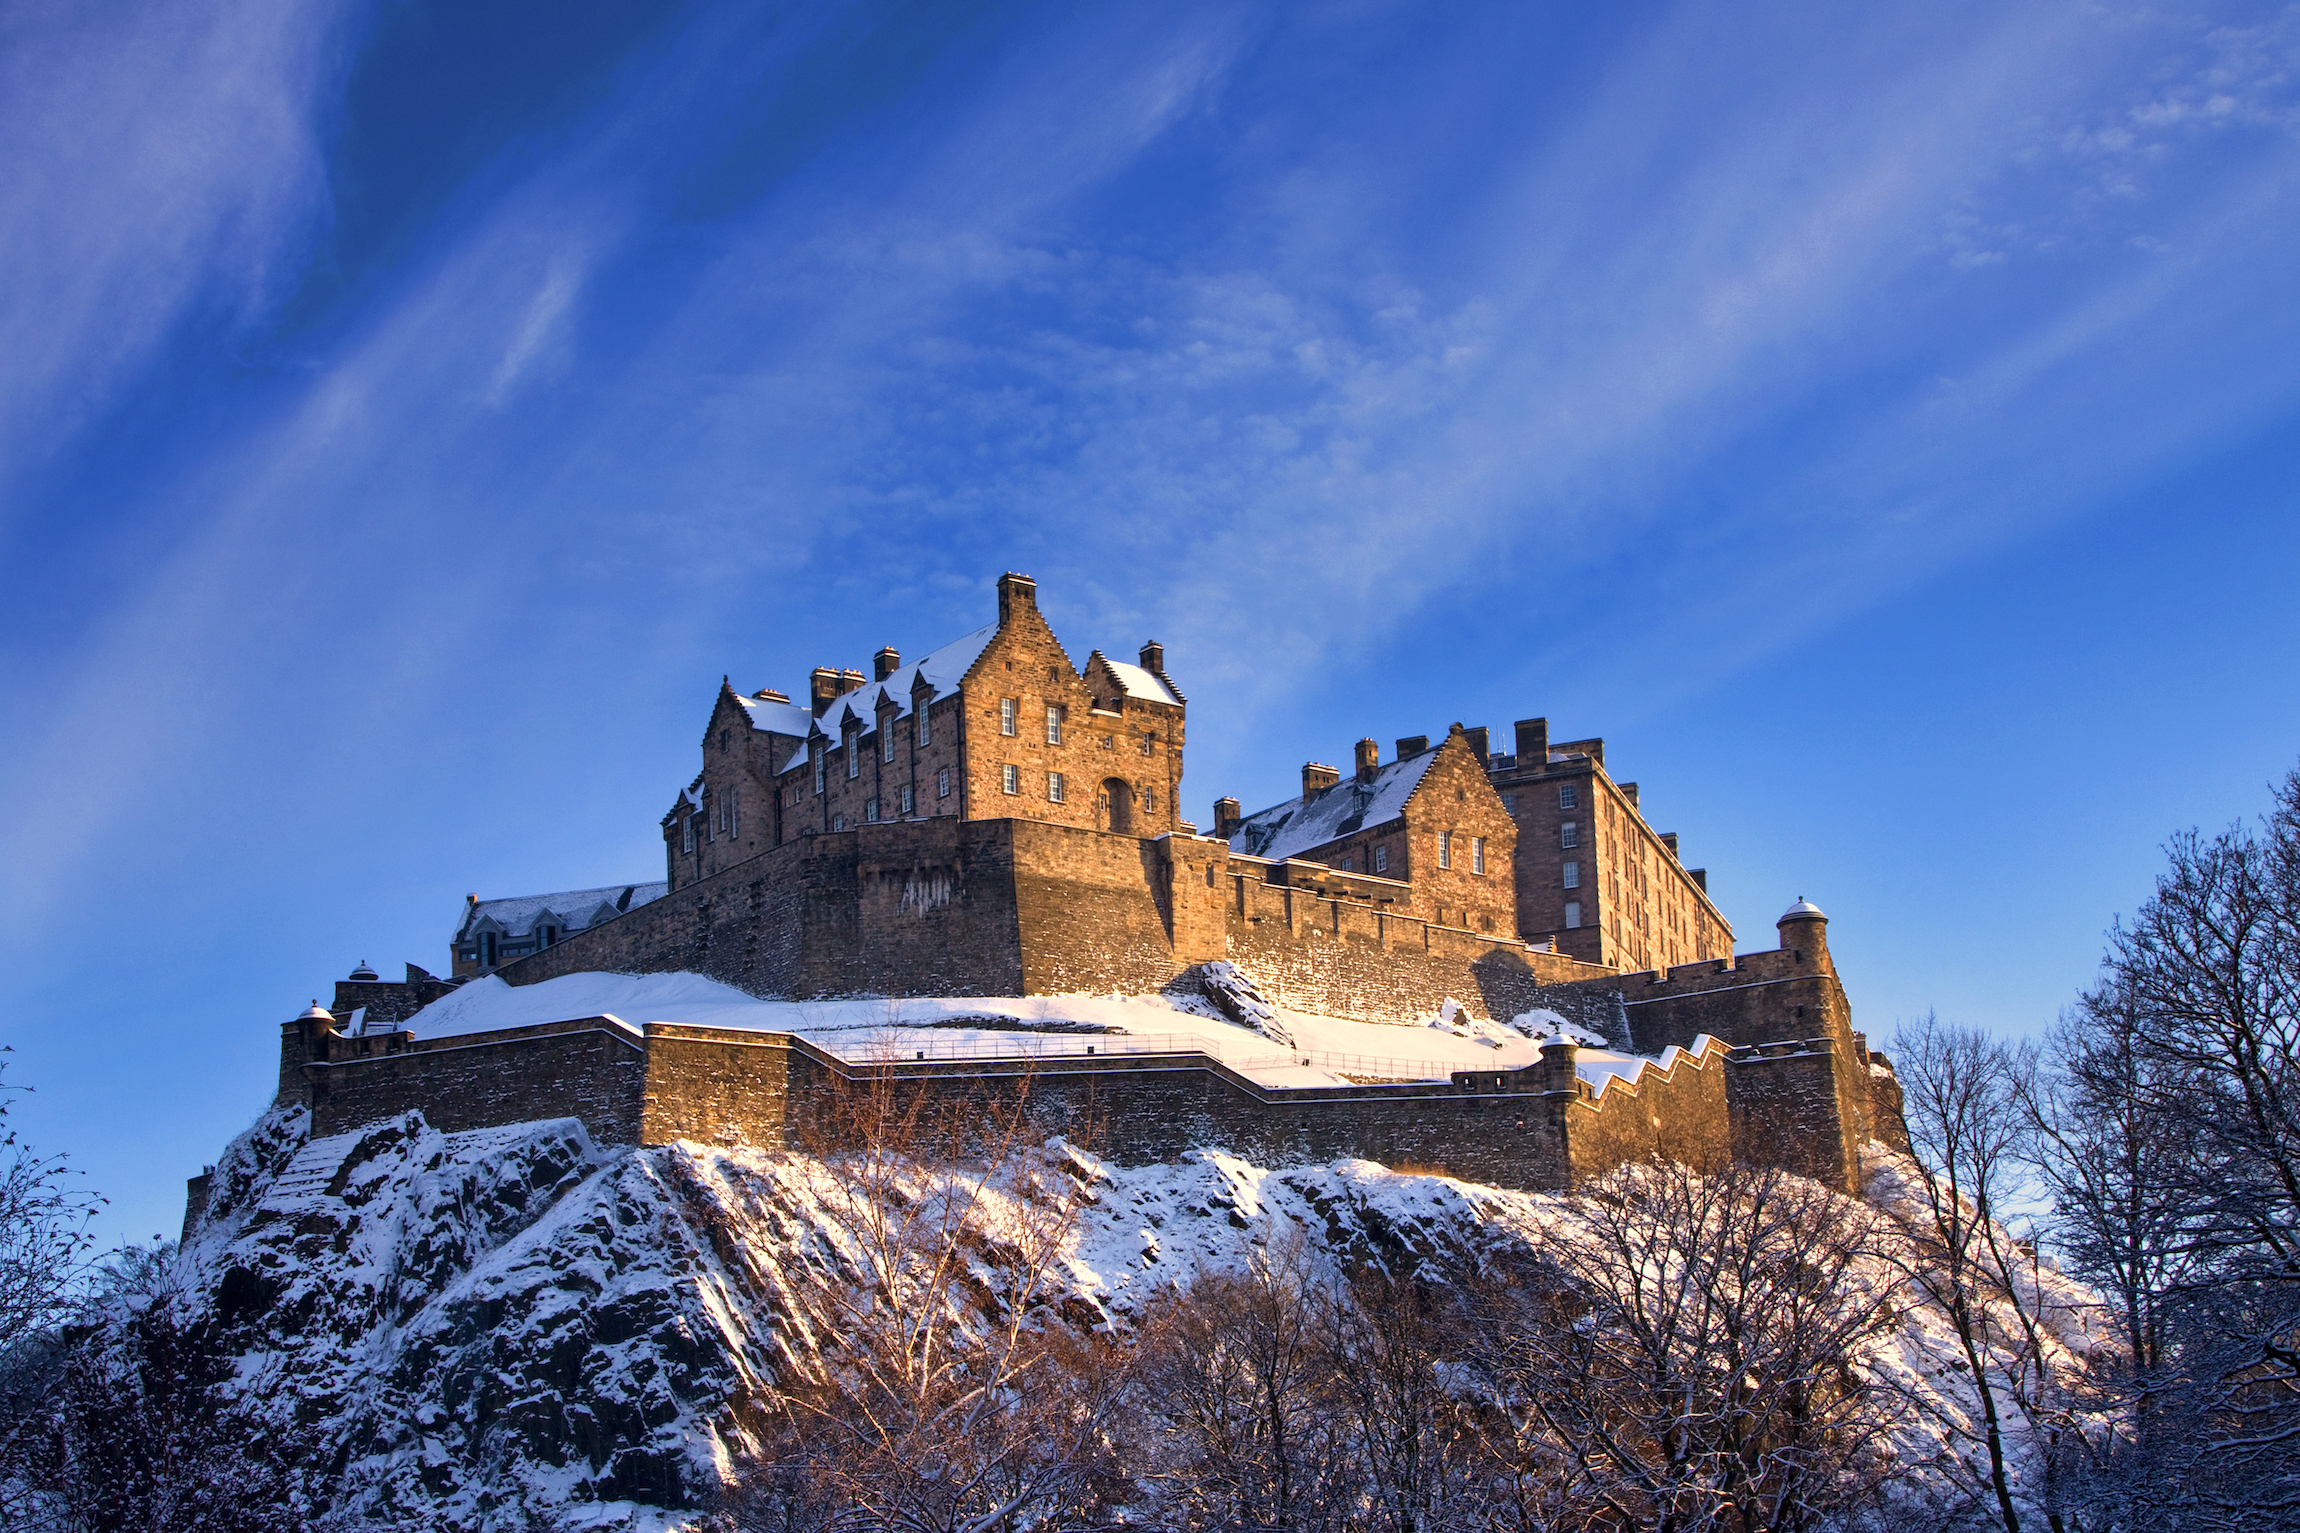 Zamek w Edynburgu odkurzony śniegiem świeci w późnym popołudniem zimowego zachodu słońca. Kiedy jechać do Edynburga?
